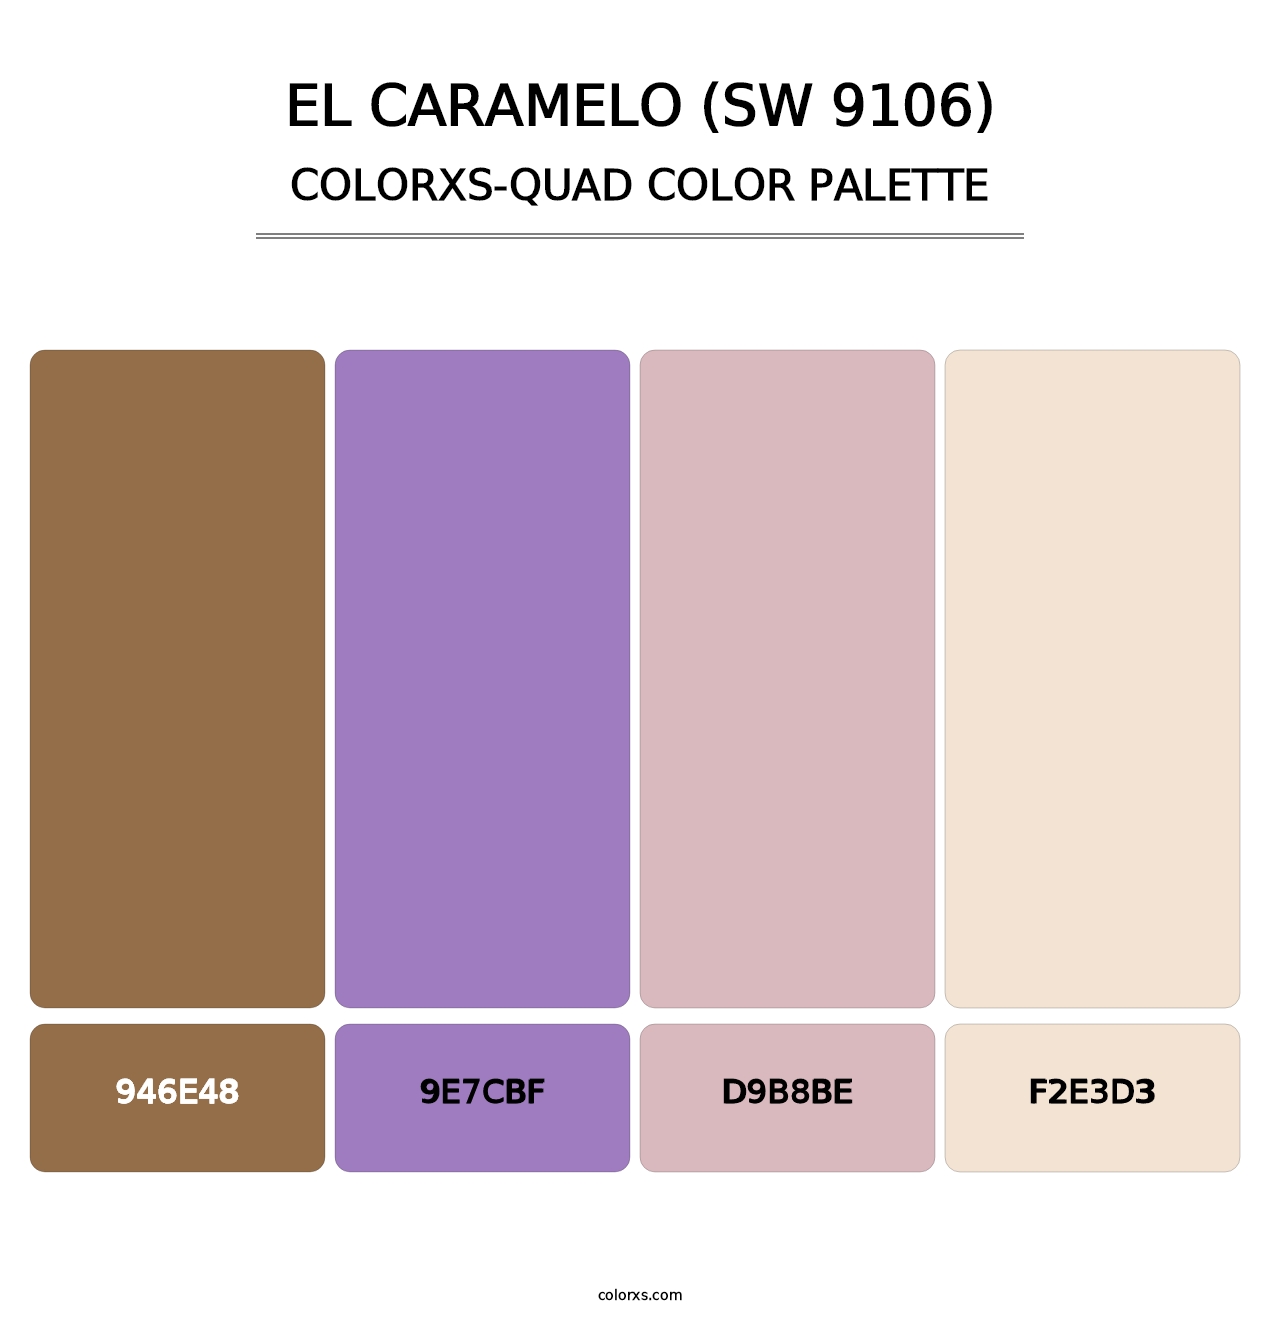 El Caramelo (SW 9106) - Colorxs Quad Palette